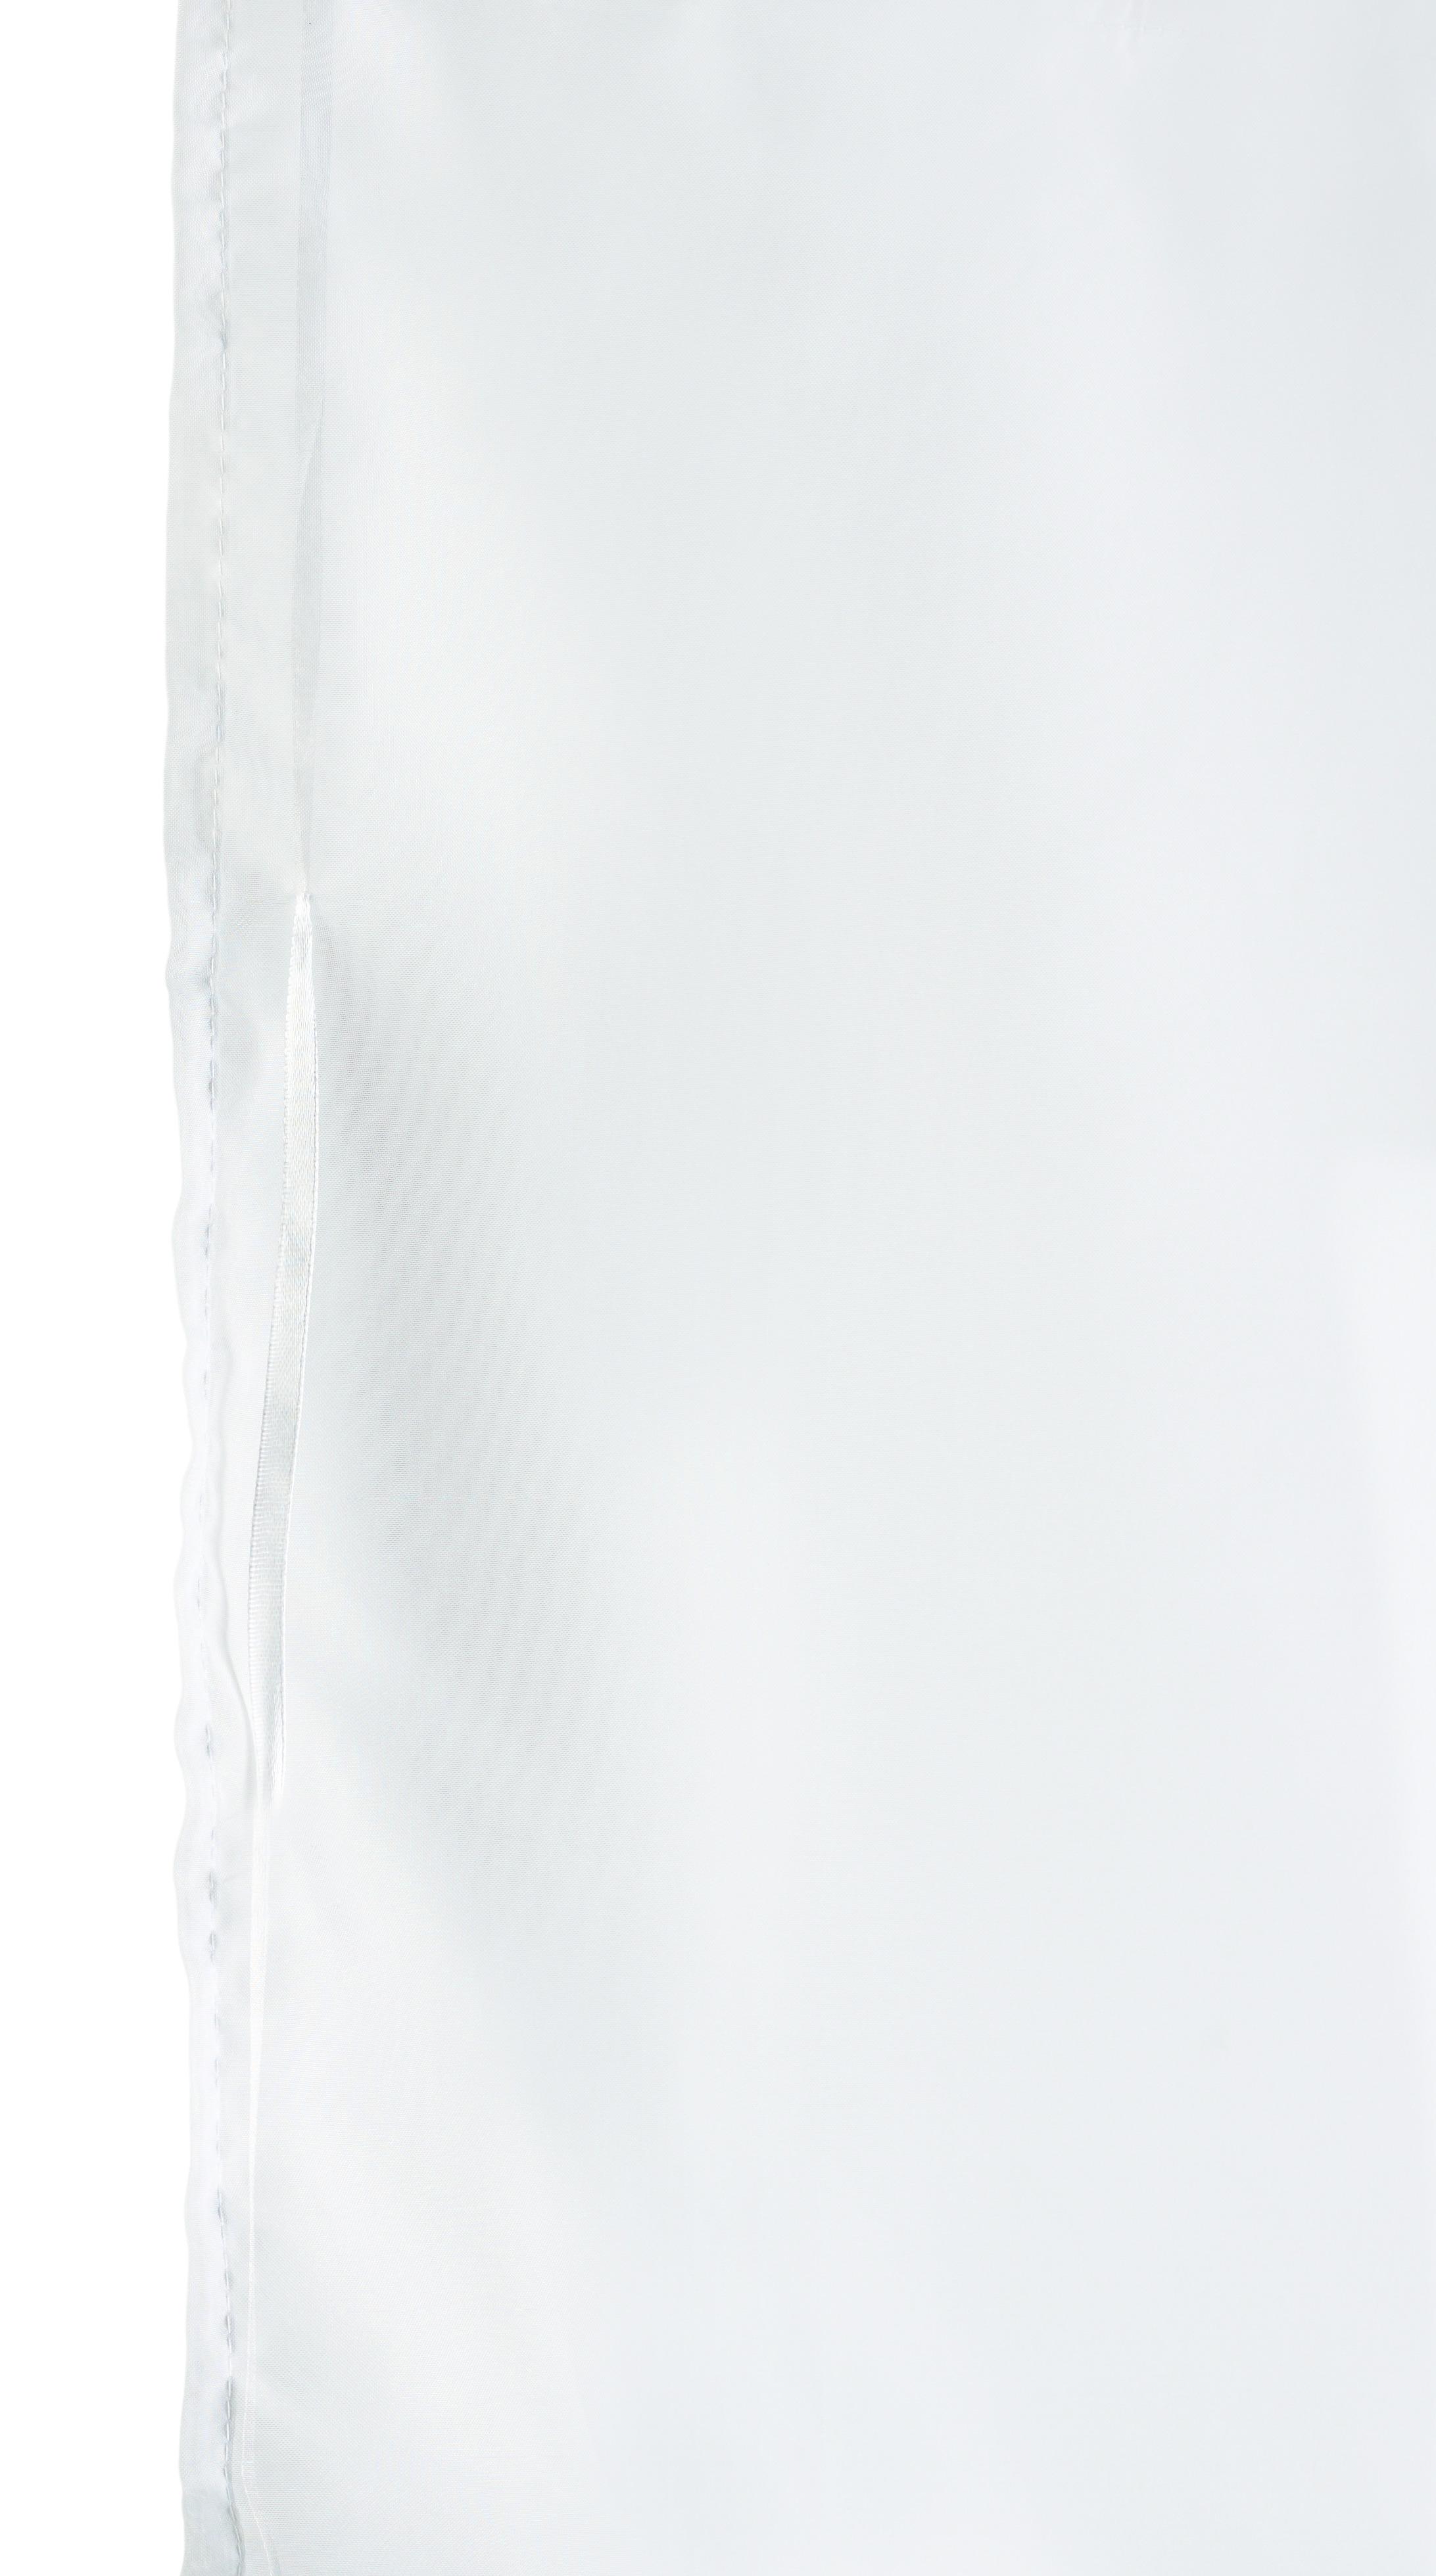 Bändchenrollo Nina in Weiß ca. 60x140cm - Weiß, Textil (60/140cm) - Modern Living